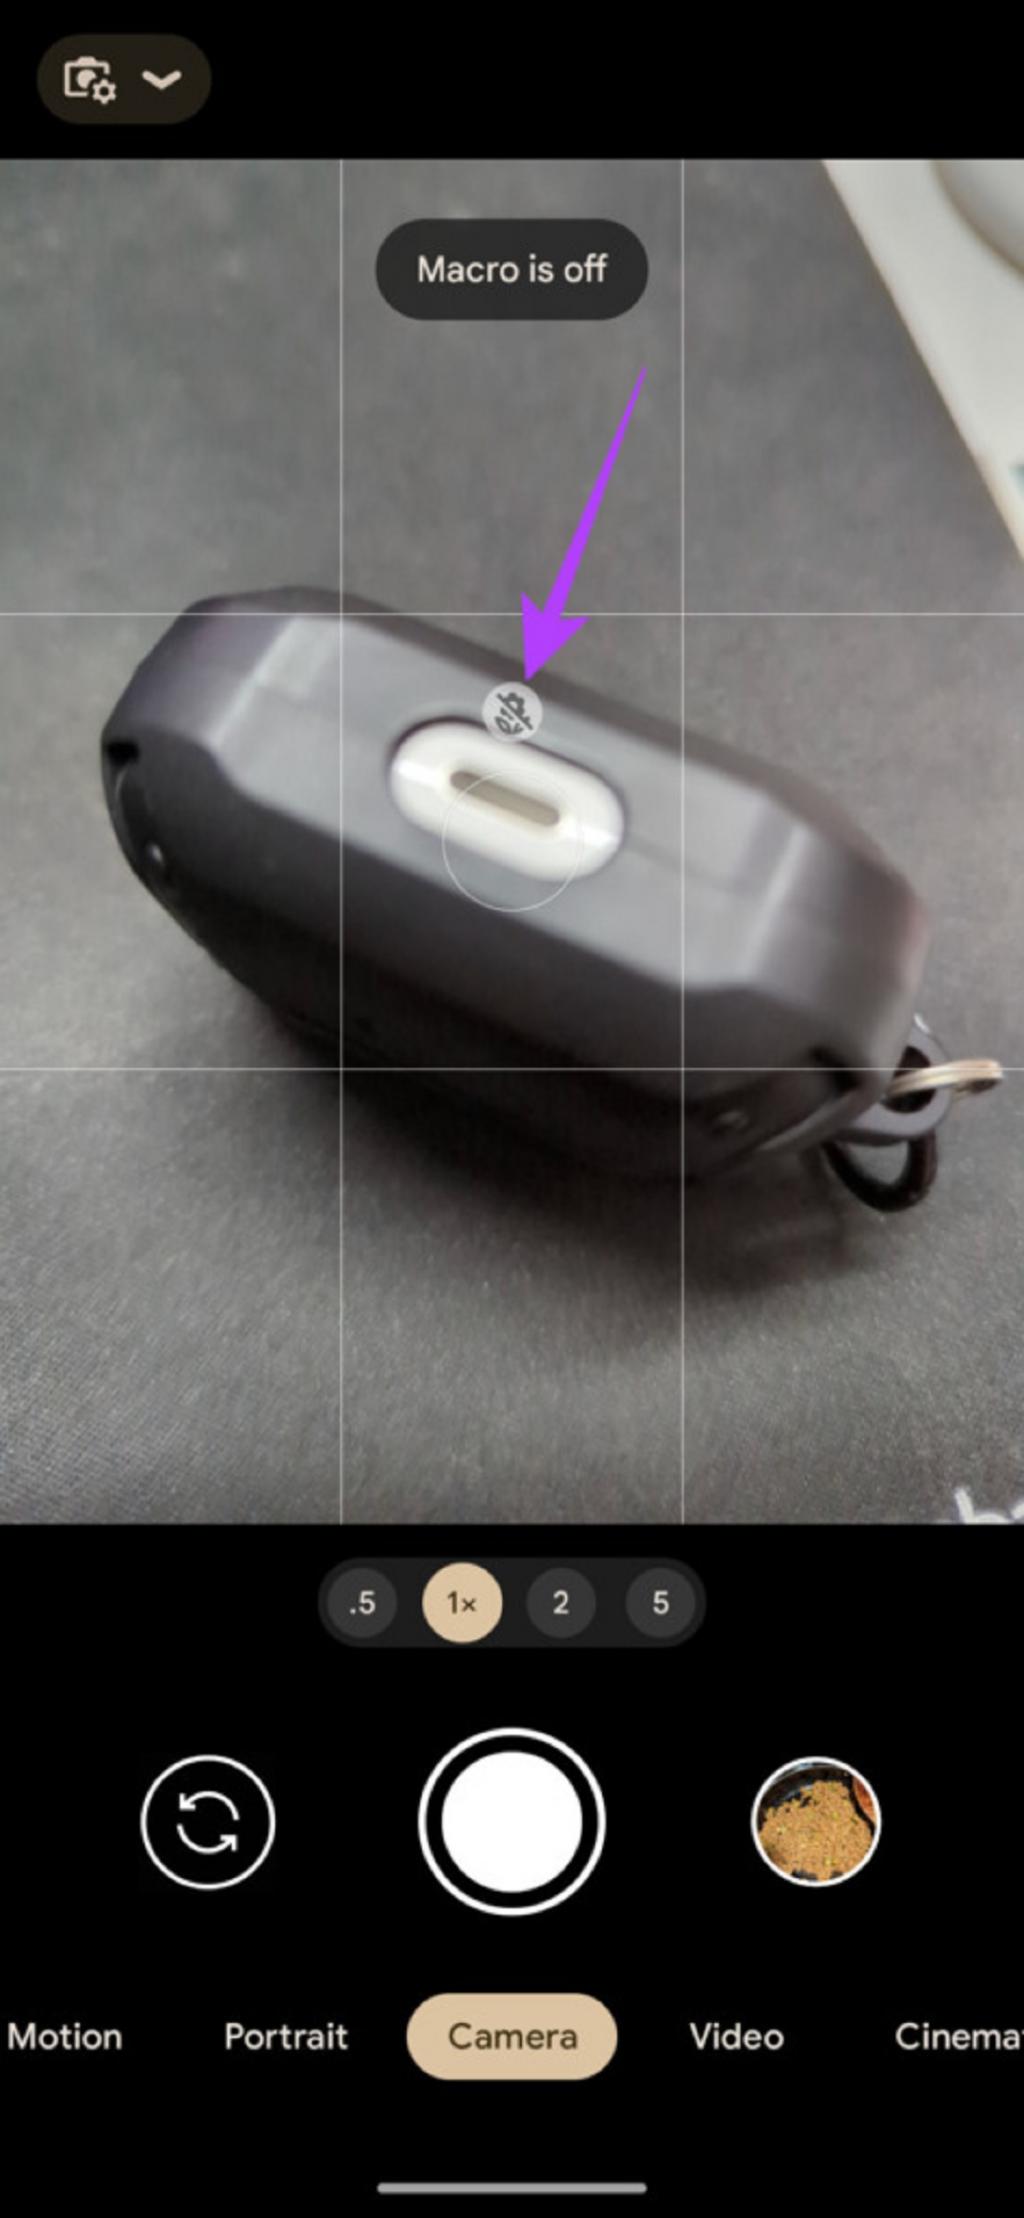 فعال کردن قابلیت حالت ماکرو یا Macro Mode دوربین گوشی پیکسل 2